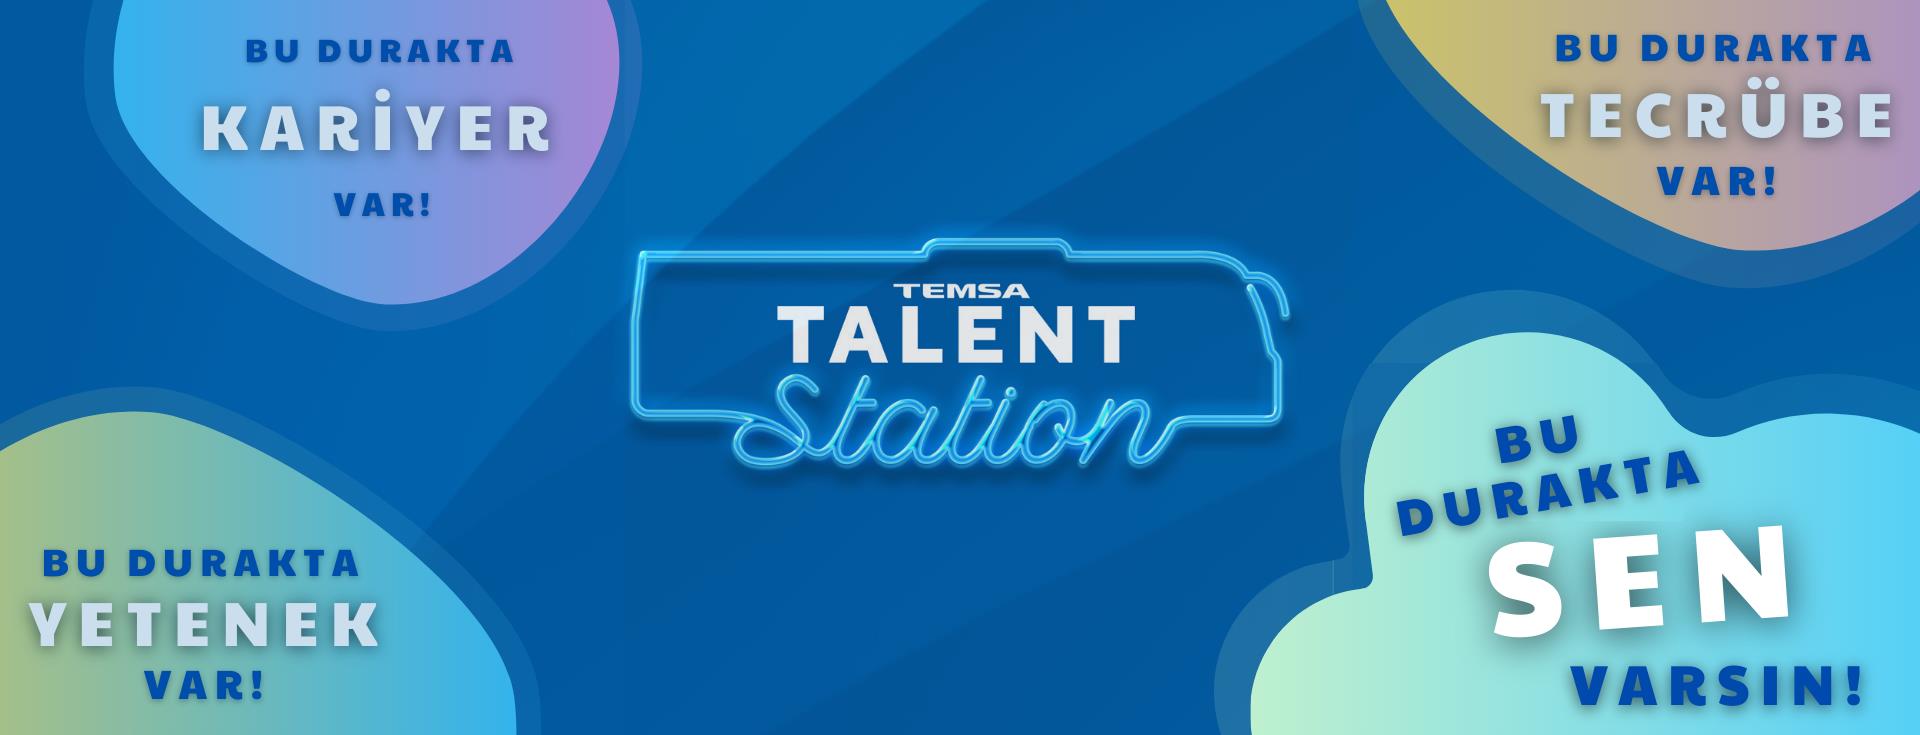 Temsa Talent Station